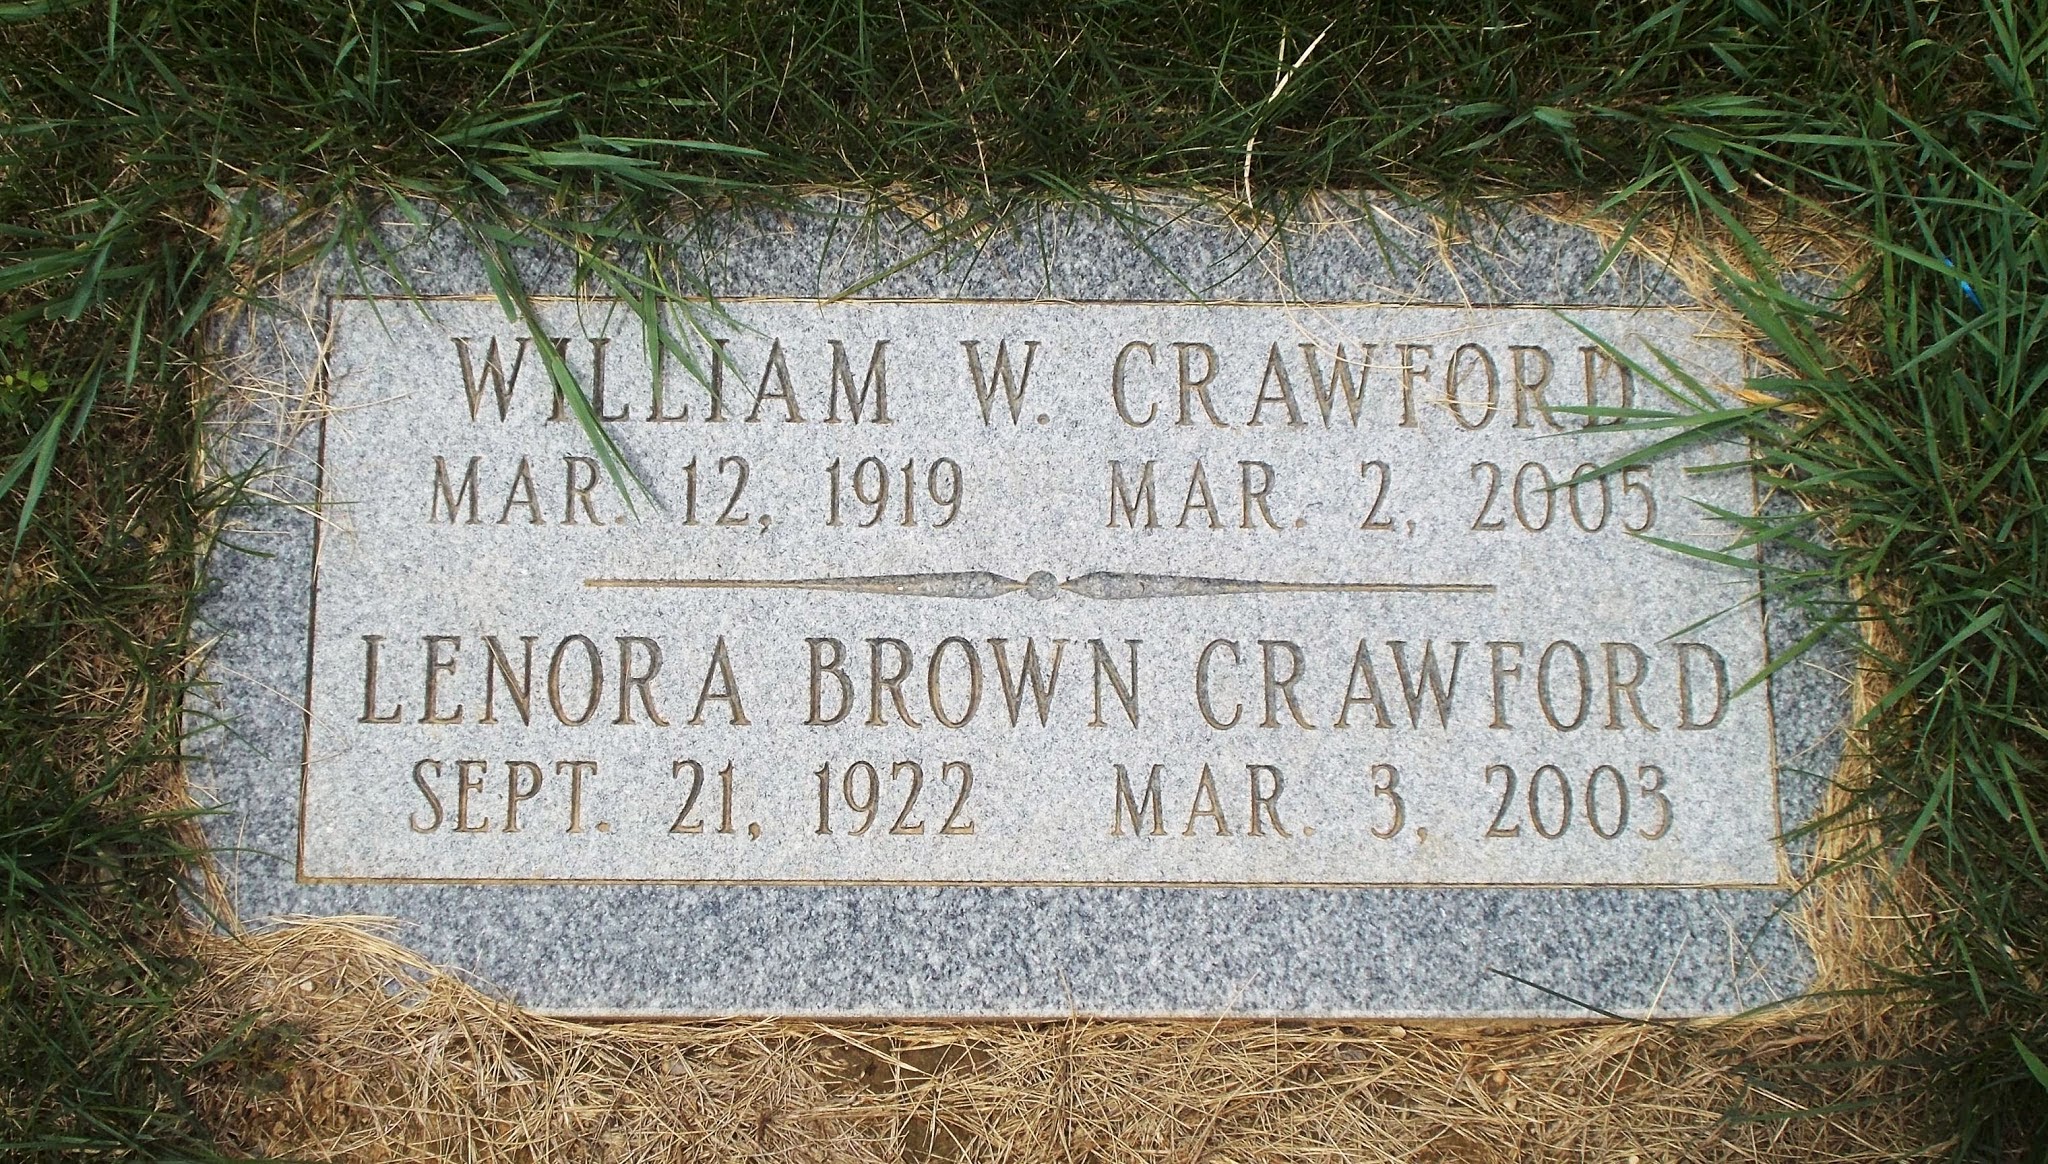 William W Crawford